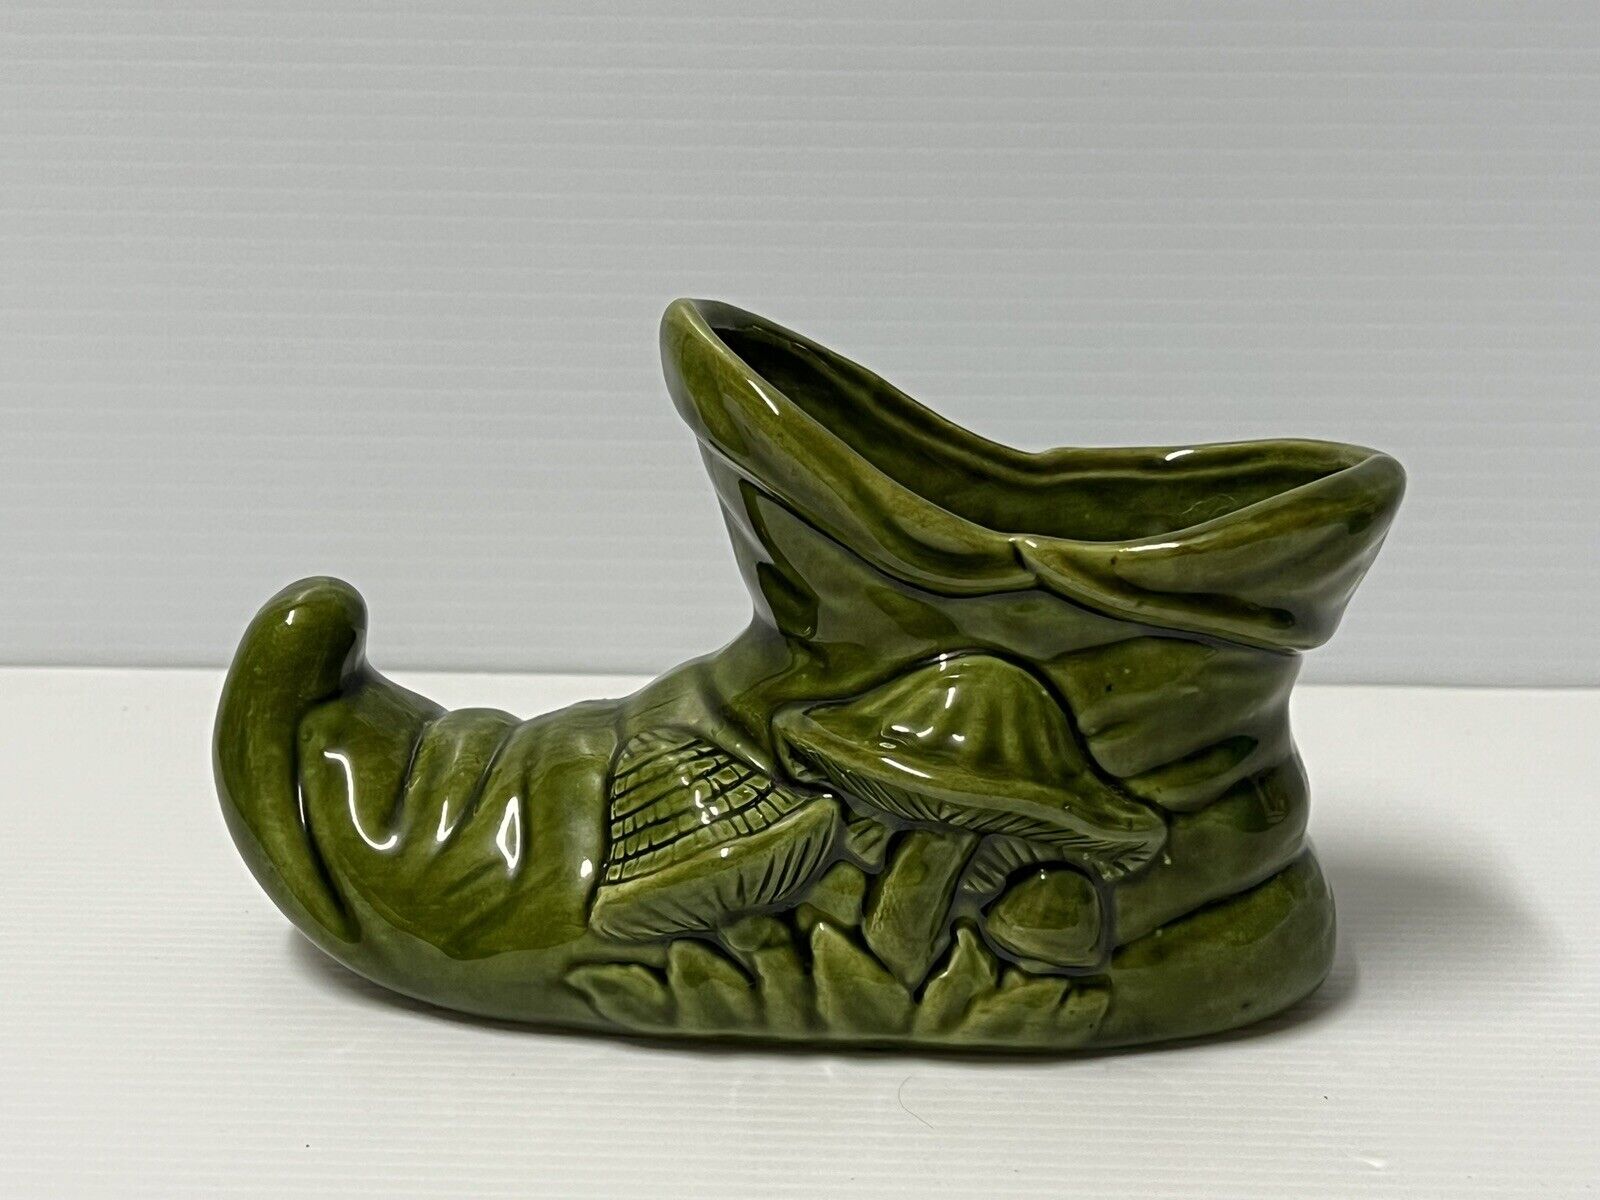 VTG 1970s 80’s MUSHROOM Elf Pixie Gnome Shoe BOOT Succulent Planter Vase Ceramic